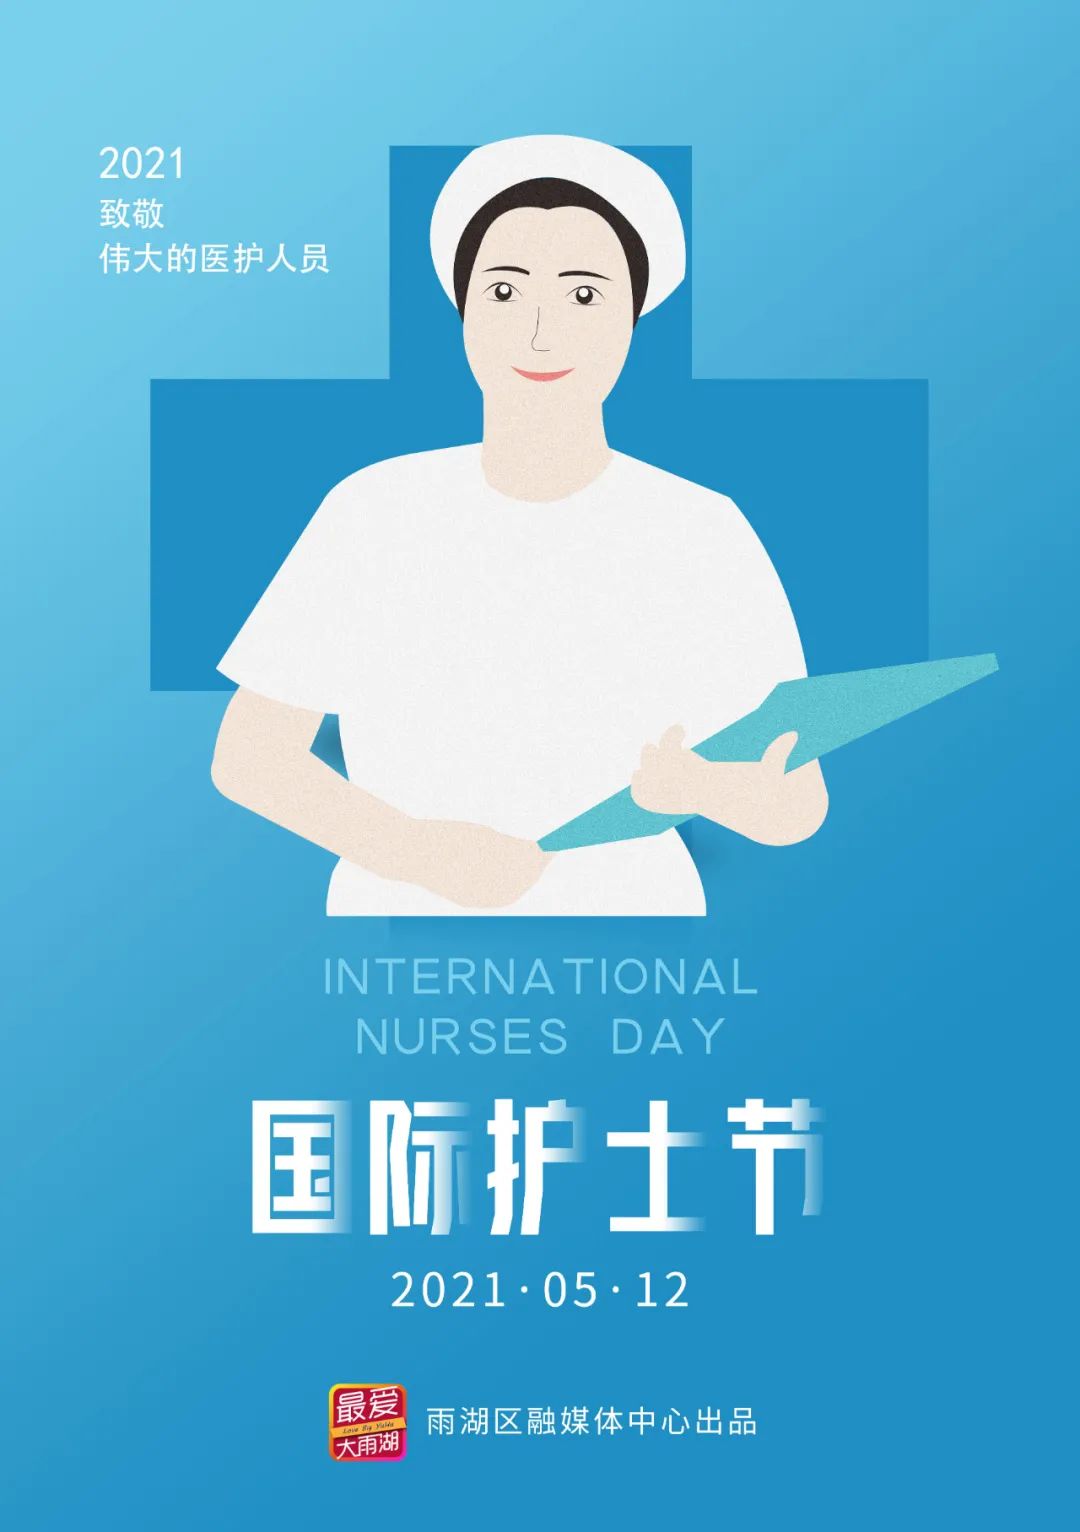 海报丨雨湖区:国际护士节,向我们身边的白衣天使致敬